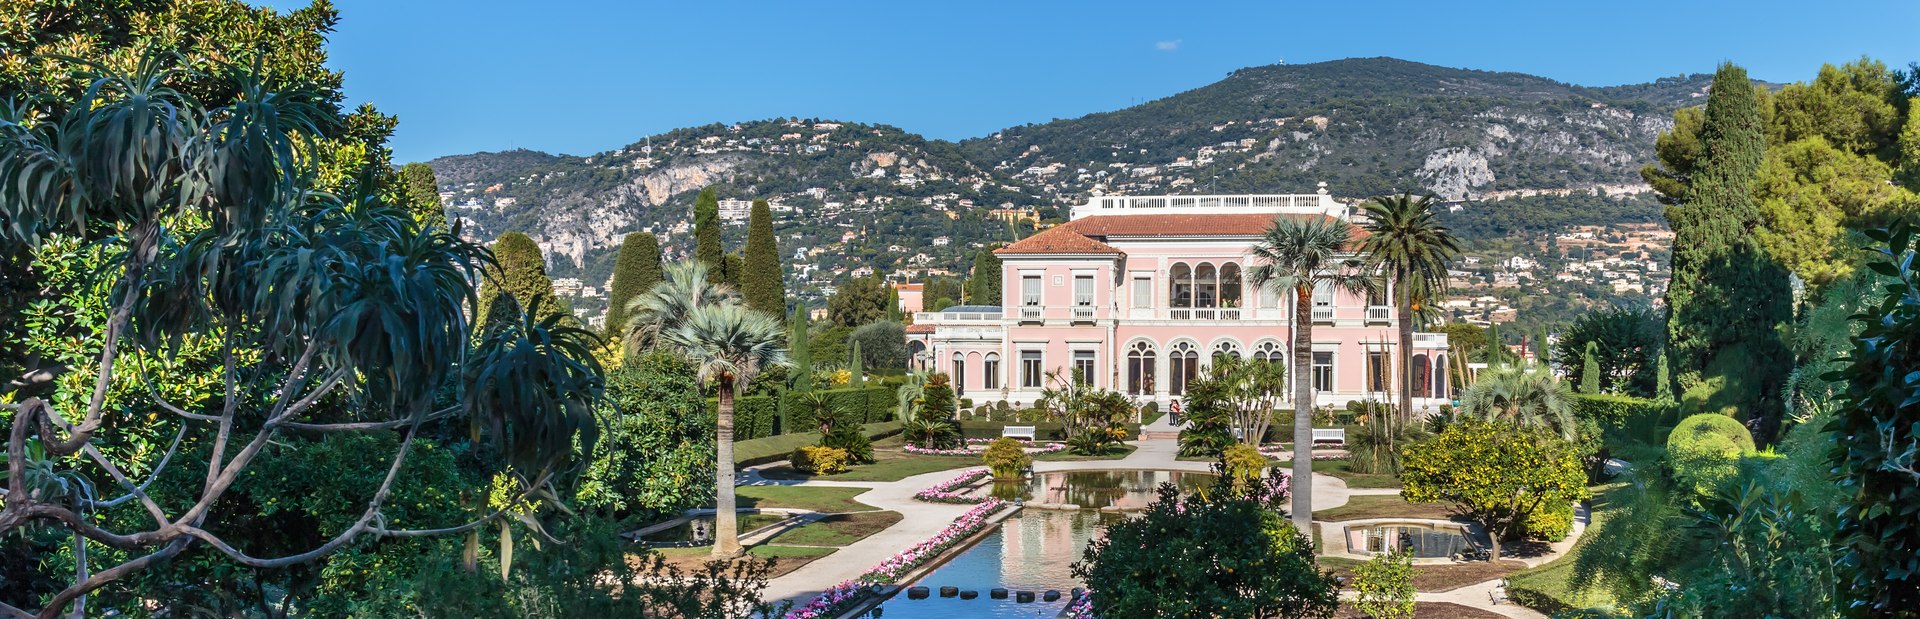 See a work of art at Villa Ephrussi de Rothschild